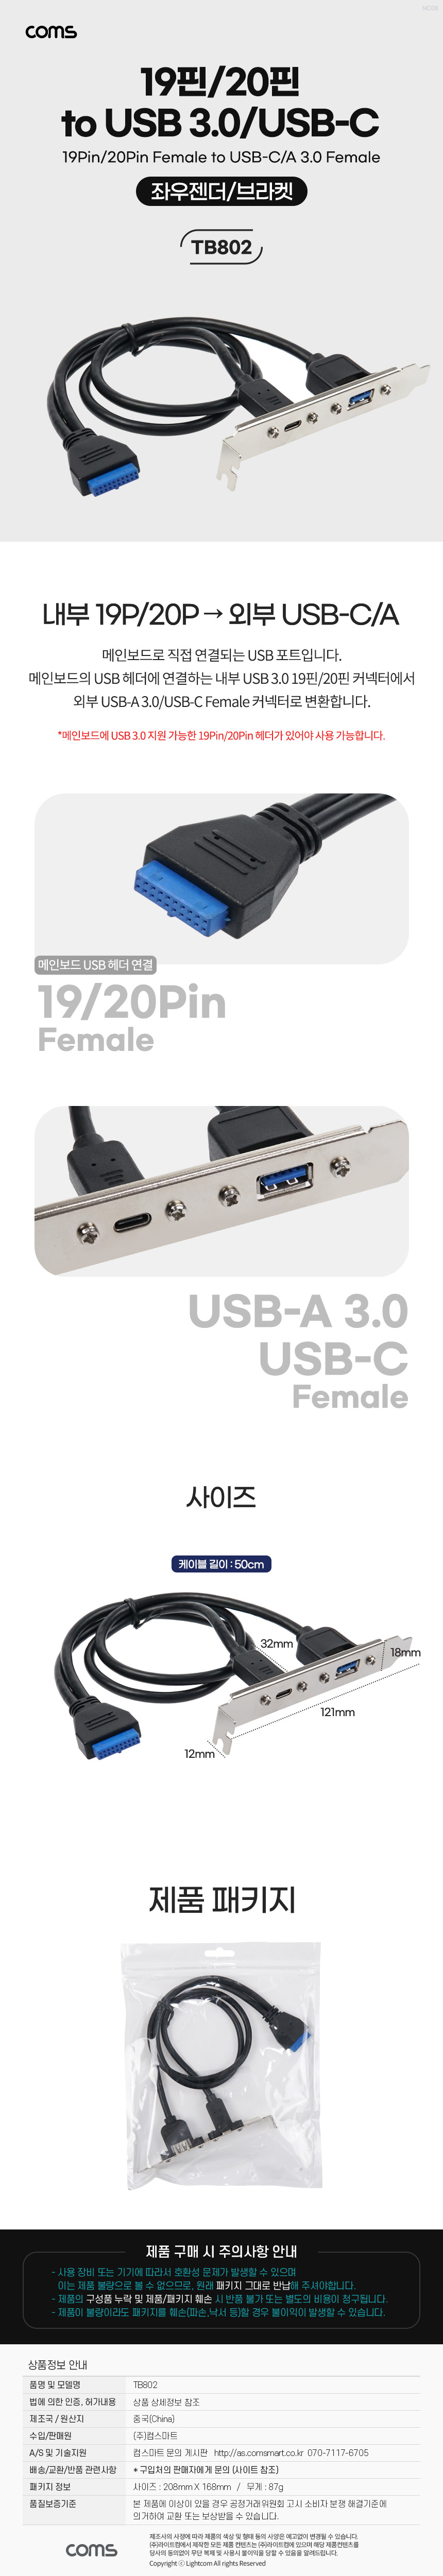 USB 포트 19Pin/20Pin to USB 3.0A C타입 2Port 2포트 듀얼젠더 메인보드 마더보드 19핀/20핀